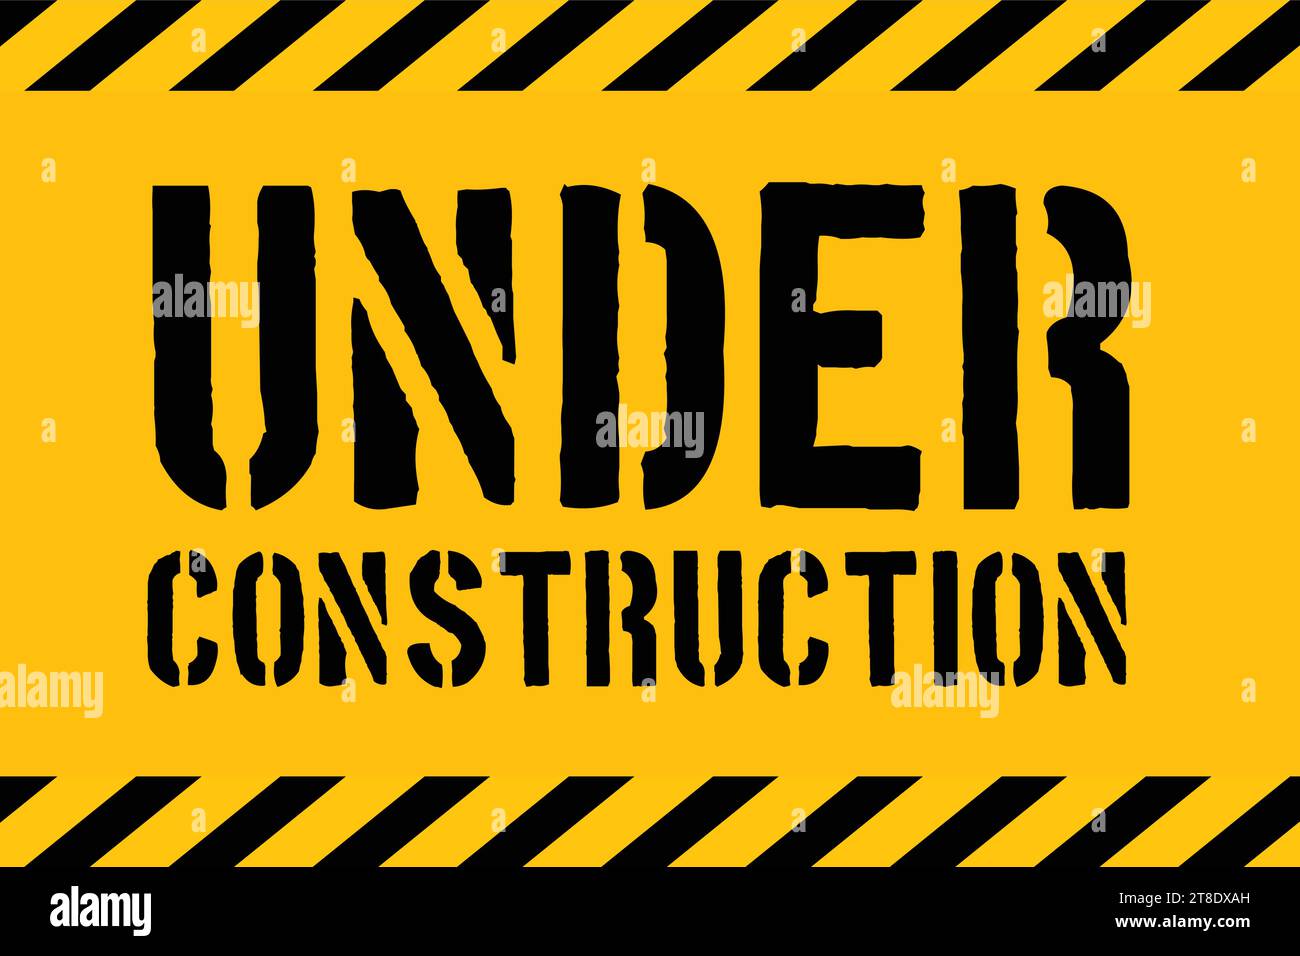 Under Construction Industrial Sign, Vector Illustration Stock Vector ...